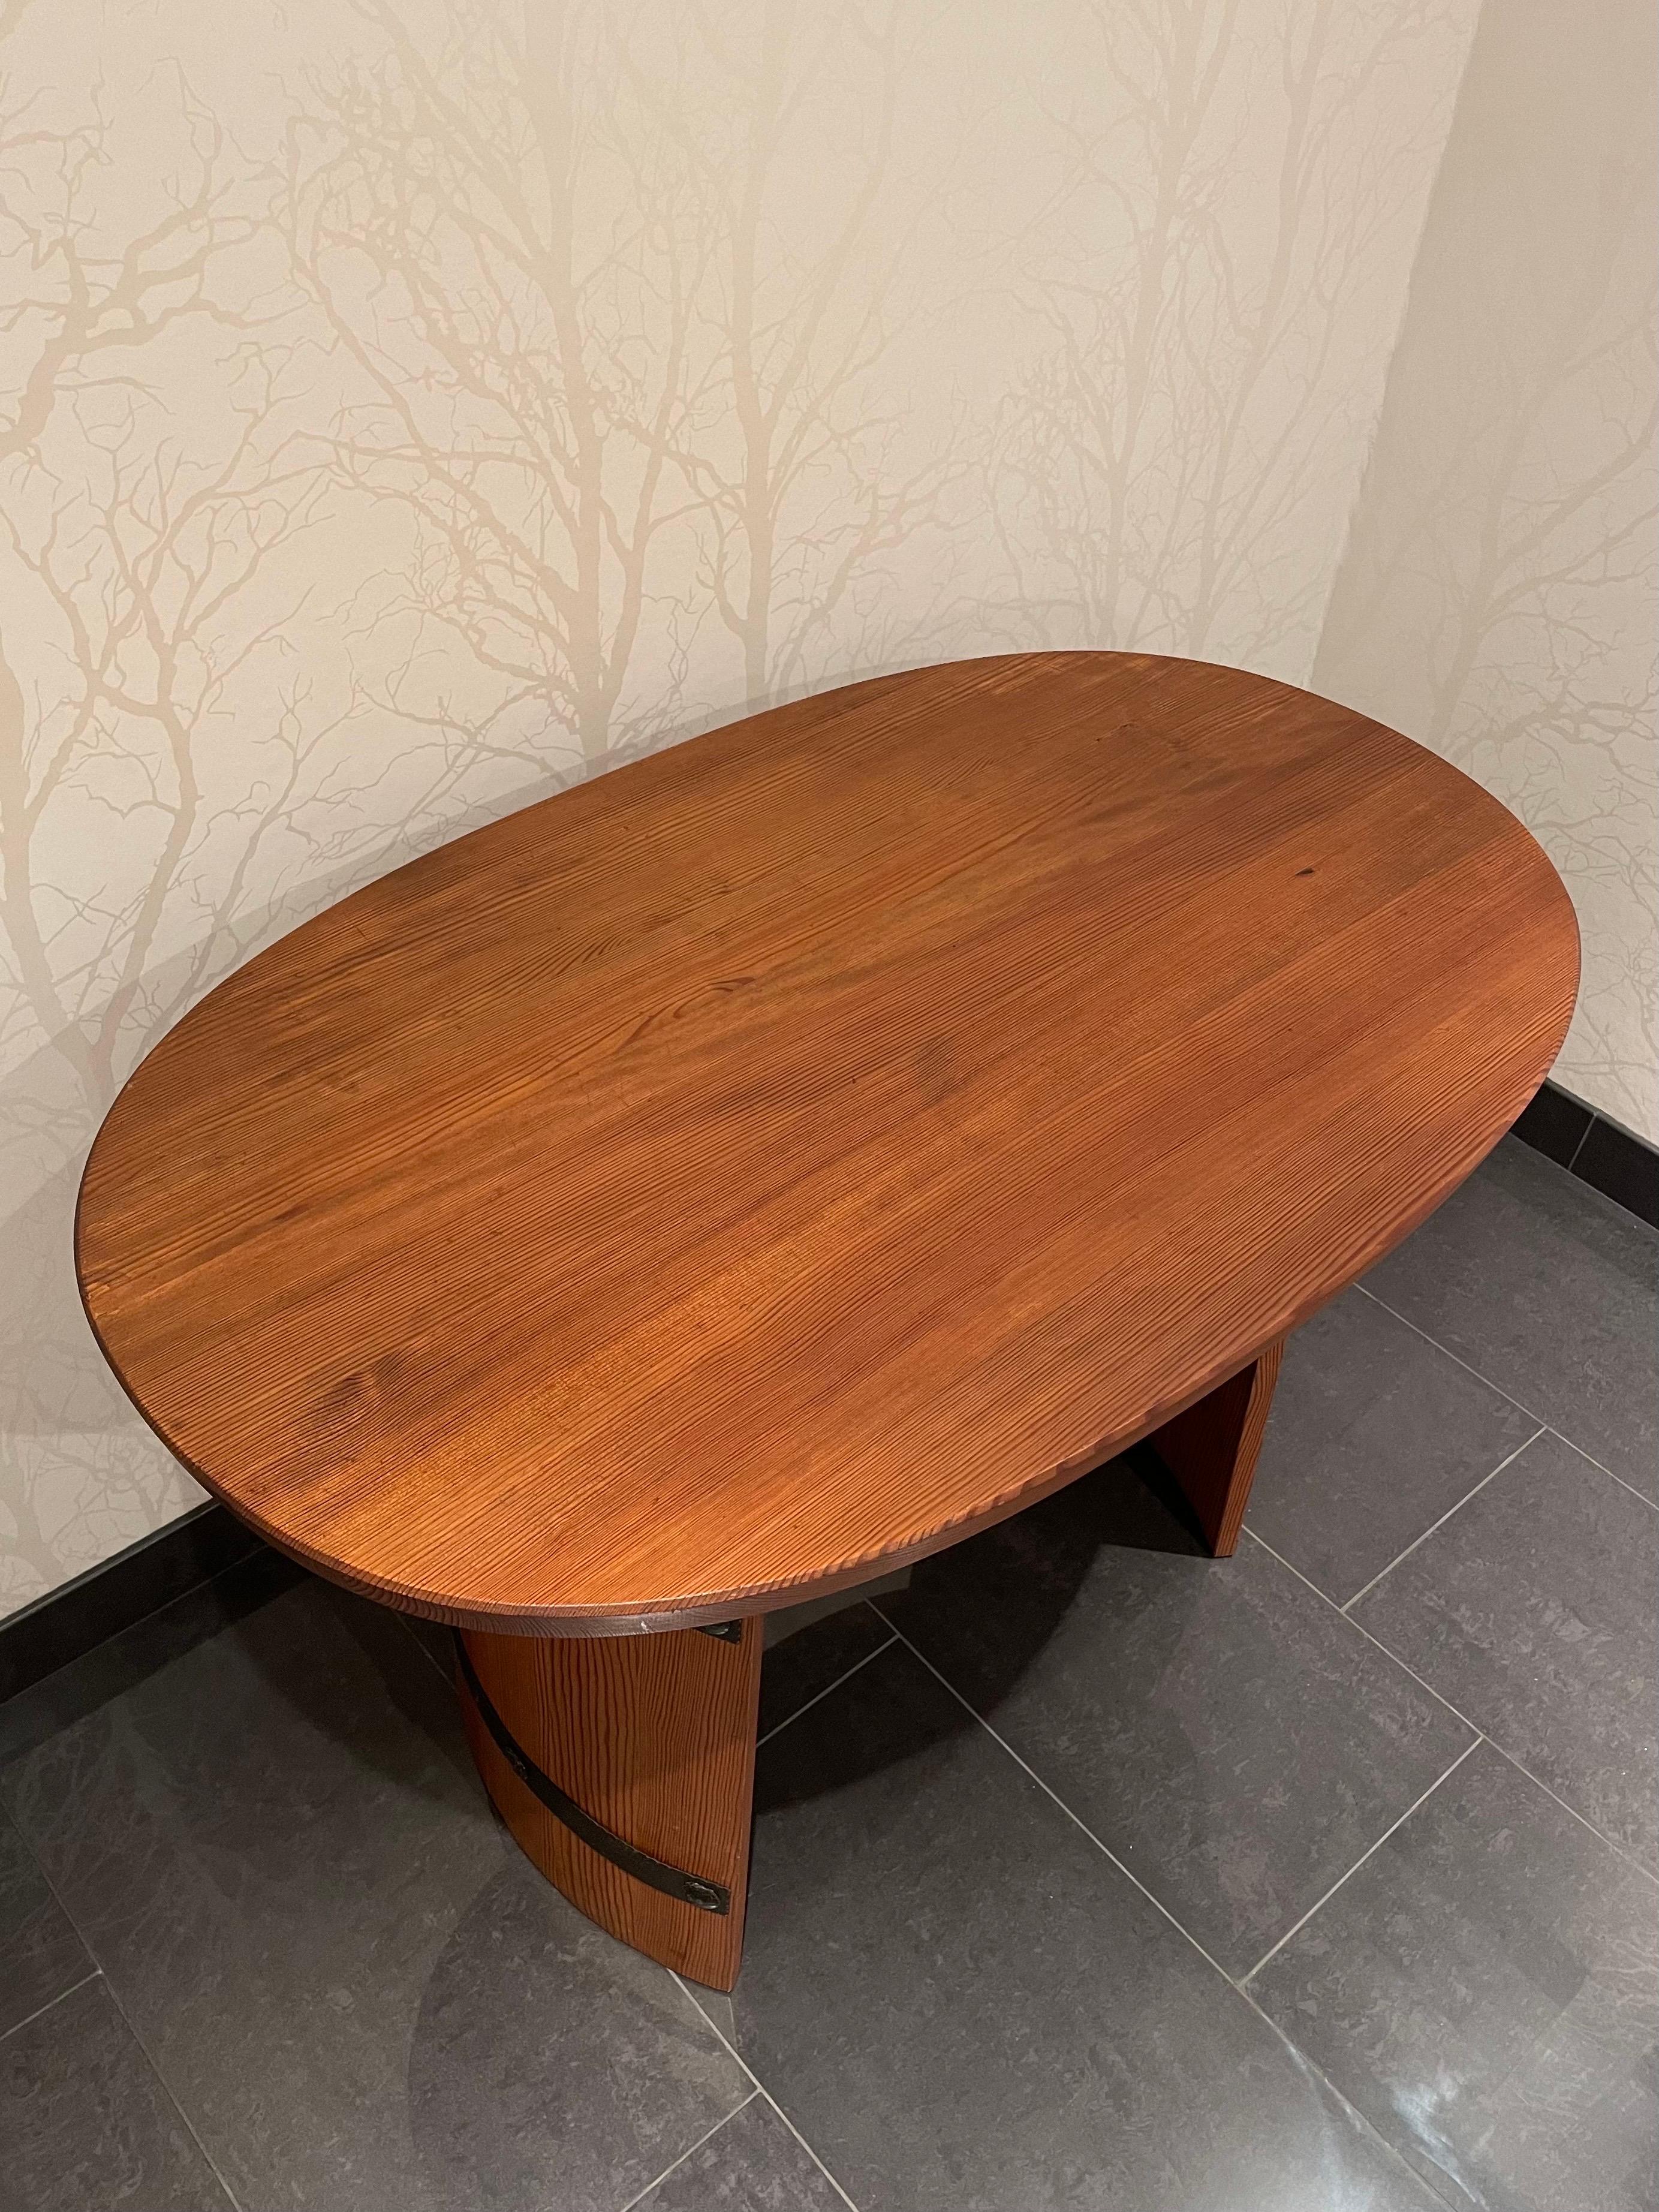 Il s'agit d'une table basse suédoise en pin massif teinté fabriquée par Åby Möbelfabrik dans les années 1930/40.

Il est doté d'un plateau ovale de 3,5 centimètres d'épaisseur et d'une tablette sous-jacente. 
Les deux pieds incurvés en forme de